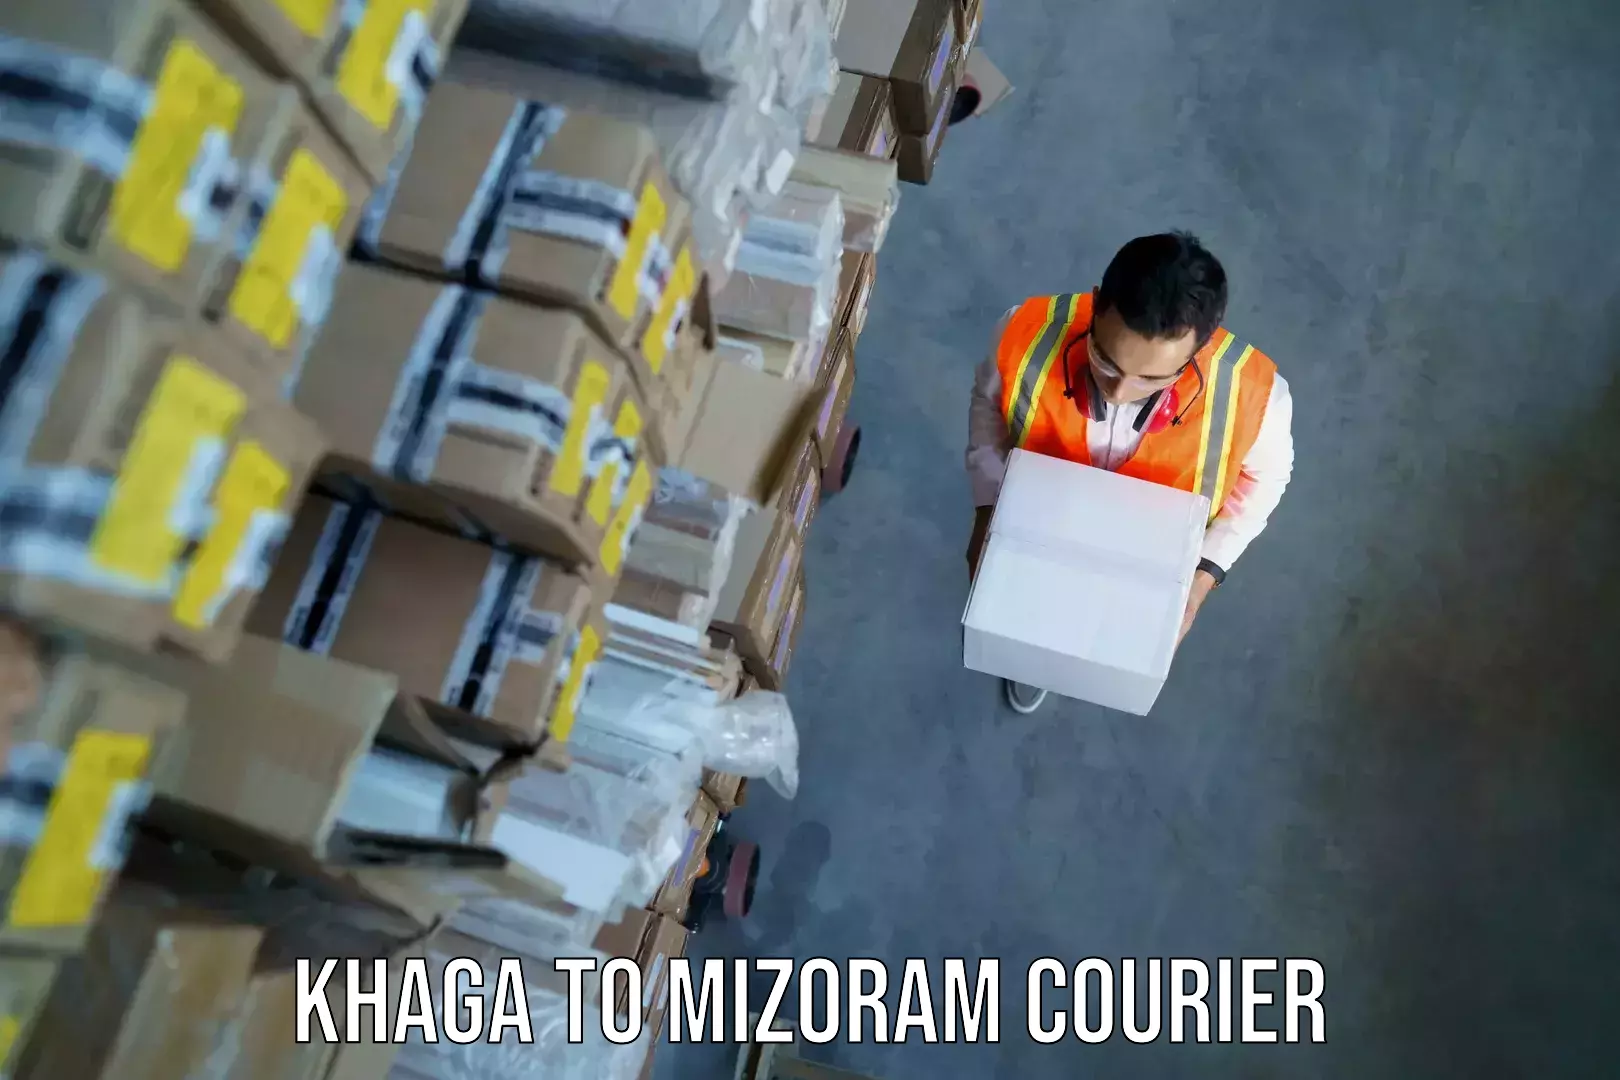 Overnight baggage shipping Khaga to Mizoram